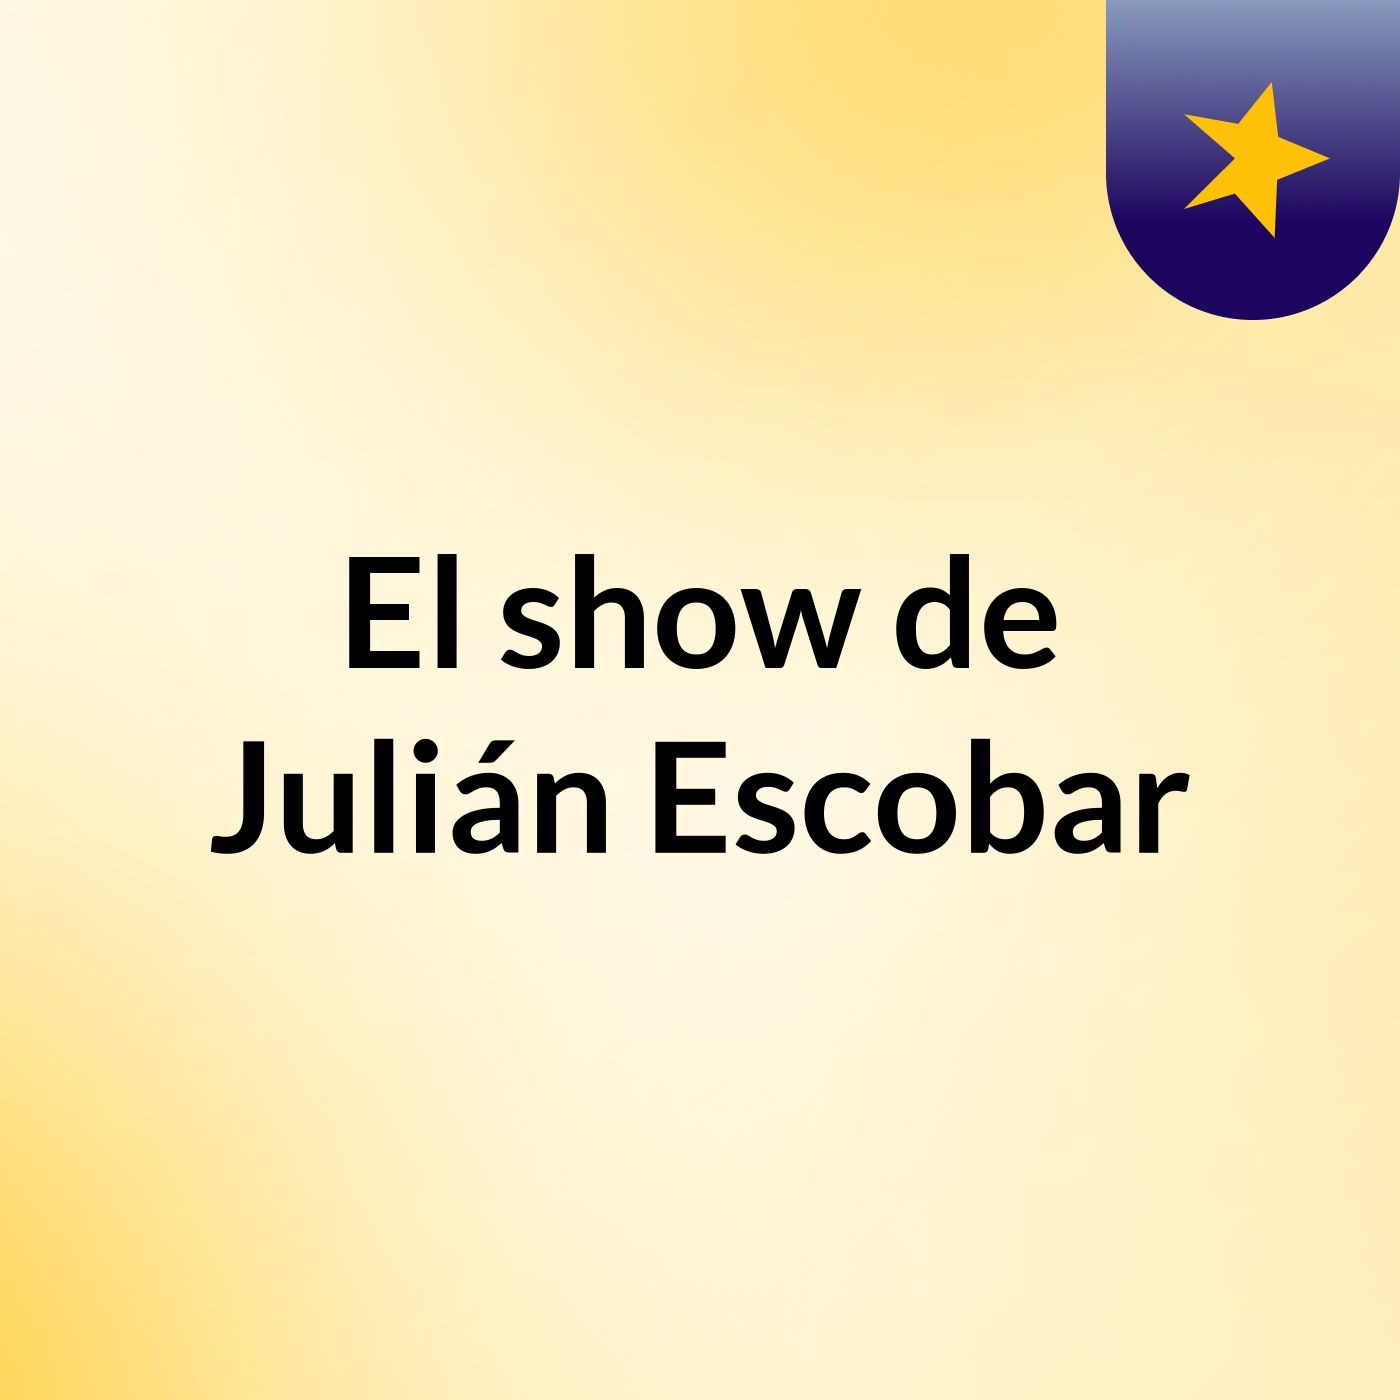 El show de Julián Escobar